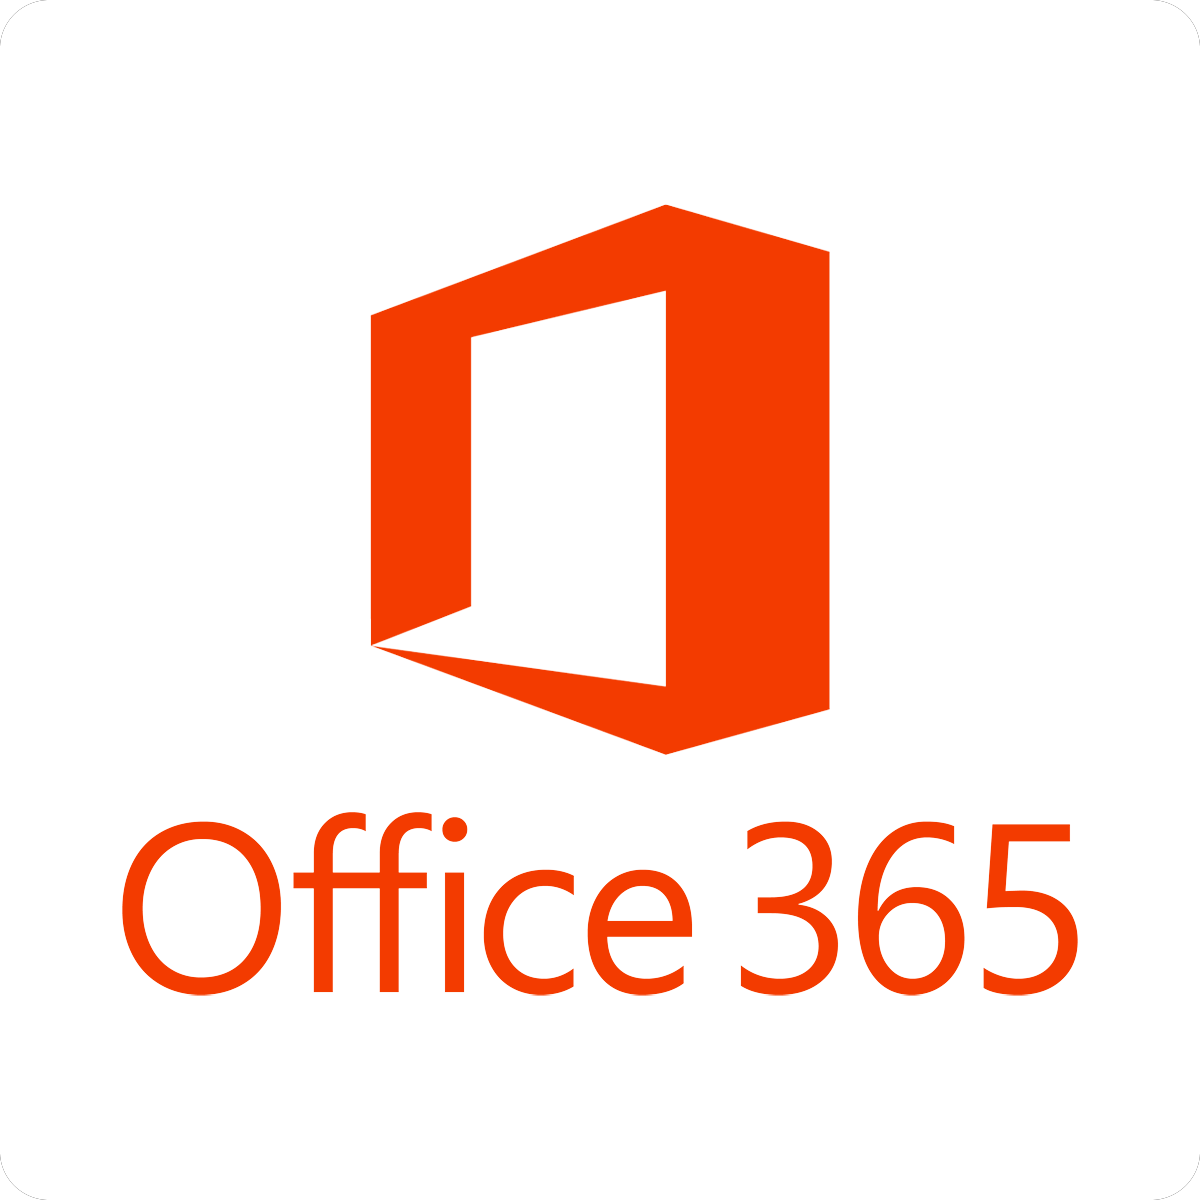 O365 Logo